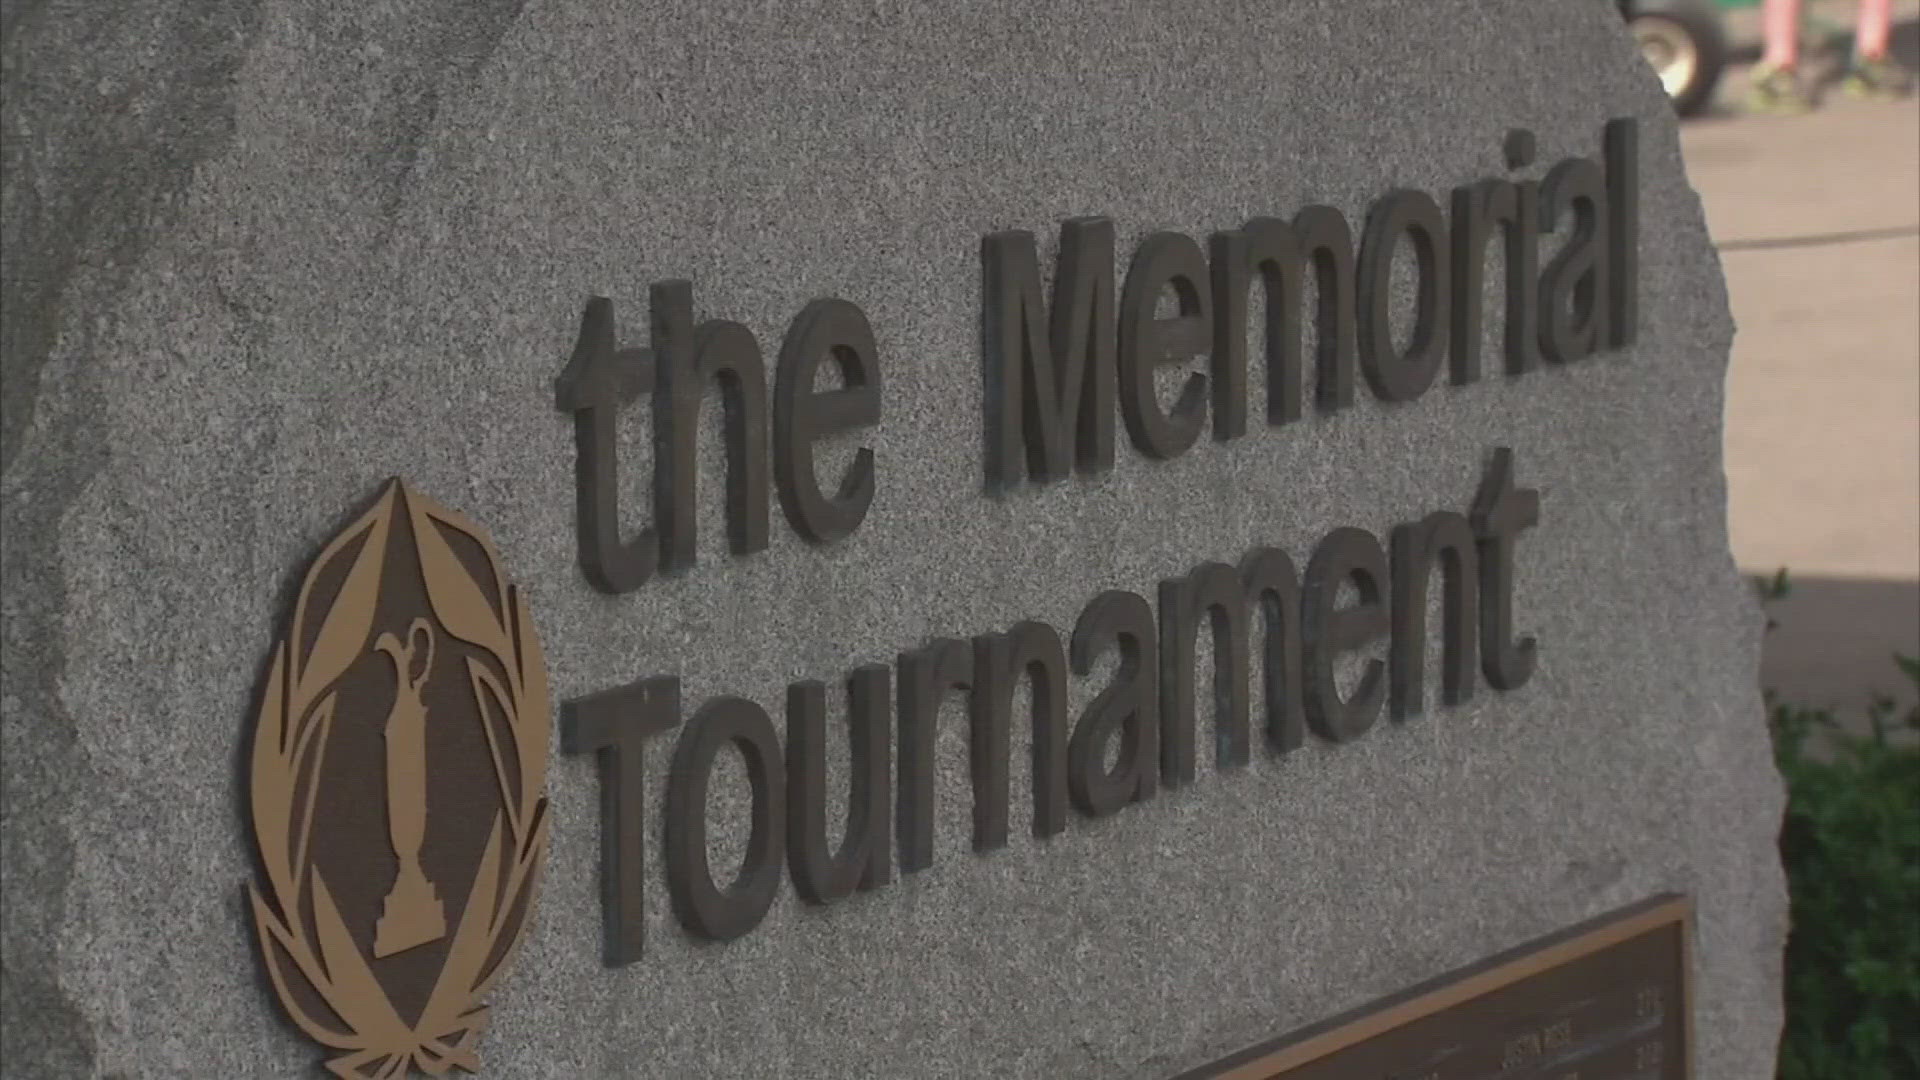 The Memorial Tournament begins on Thursday.